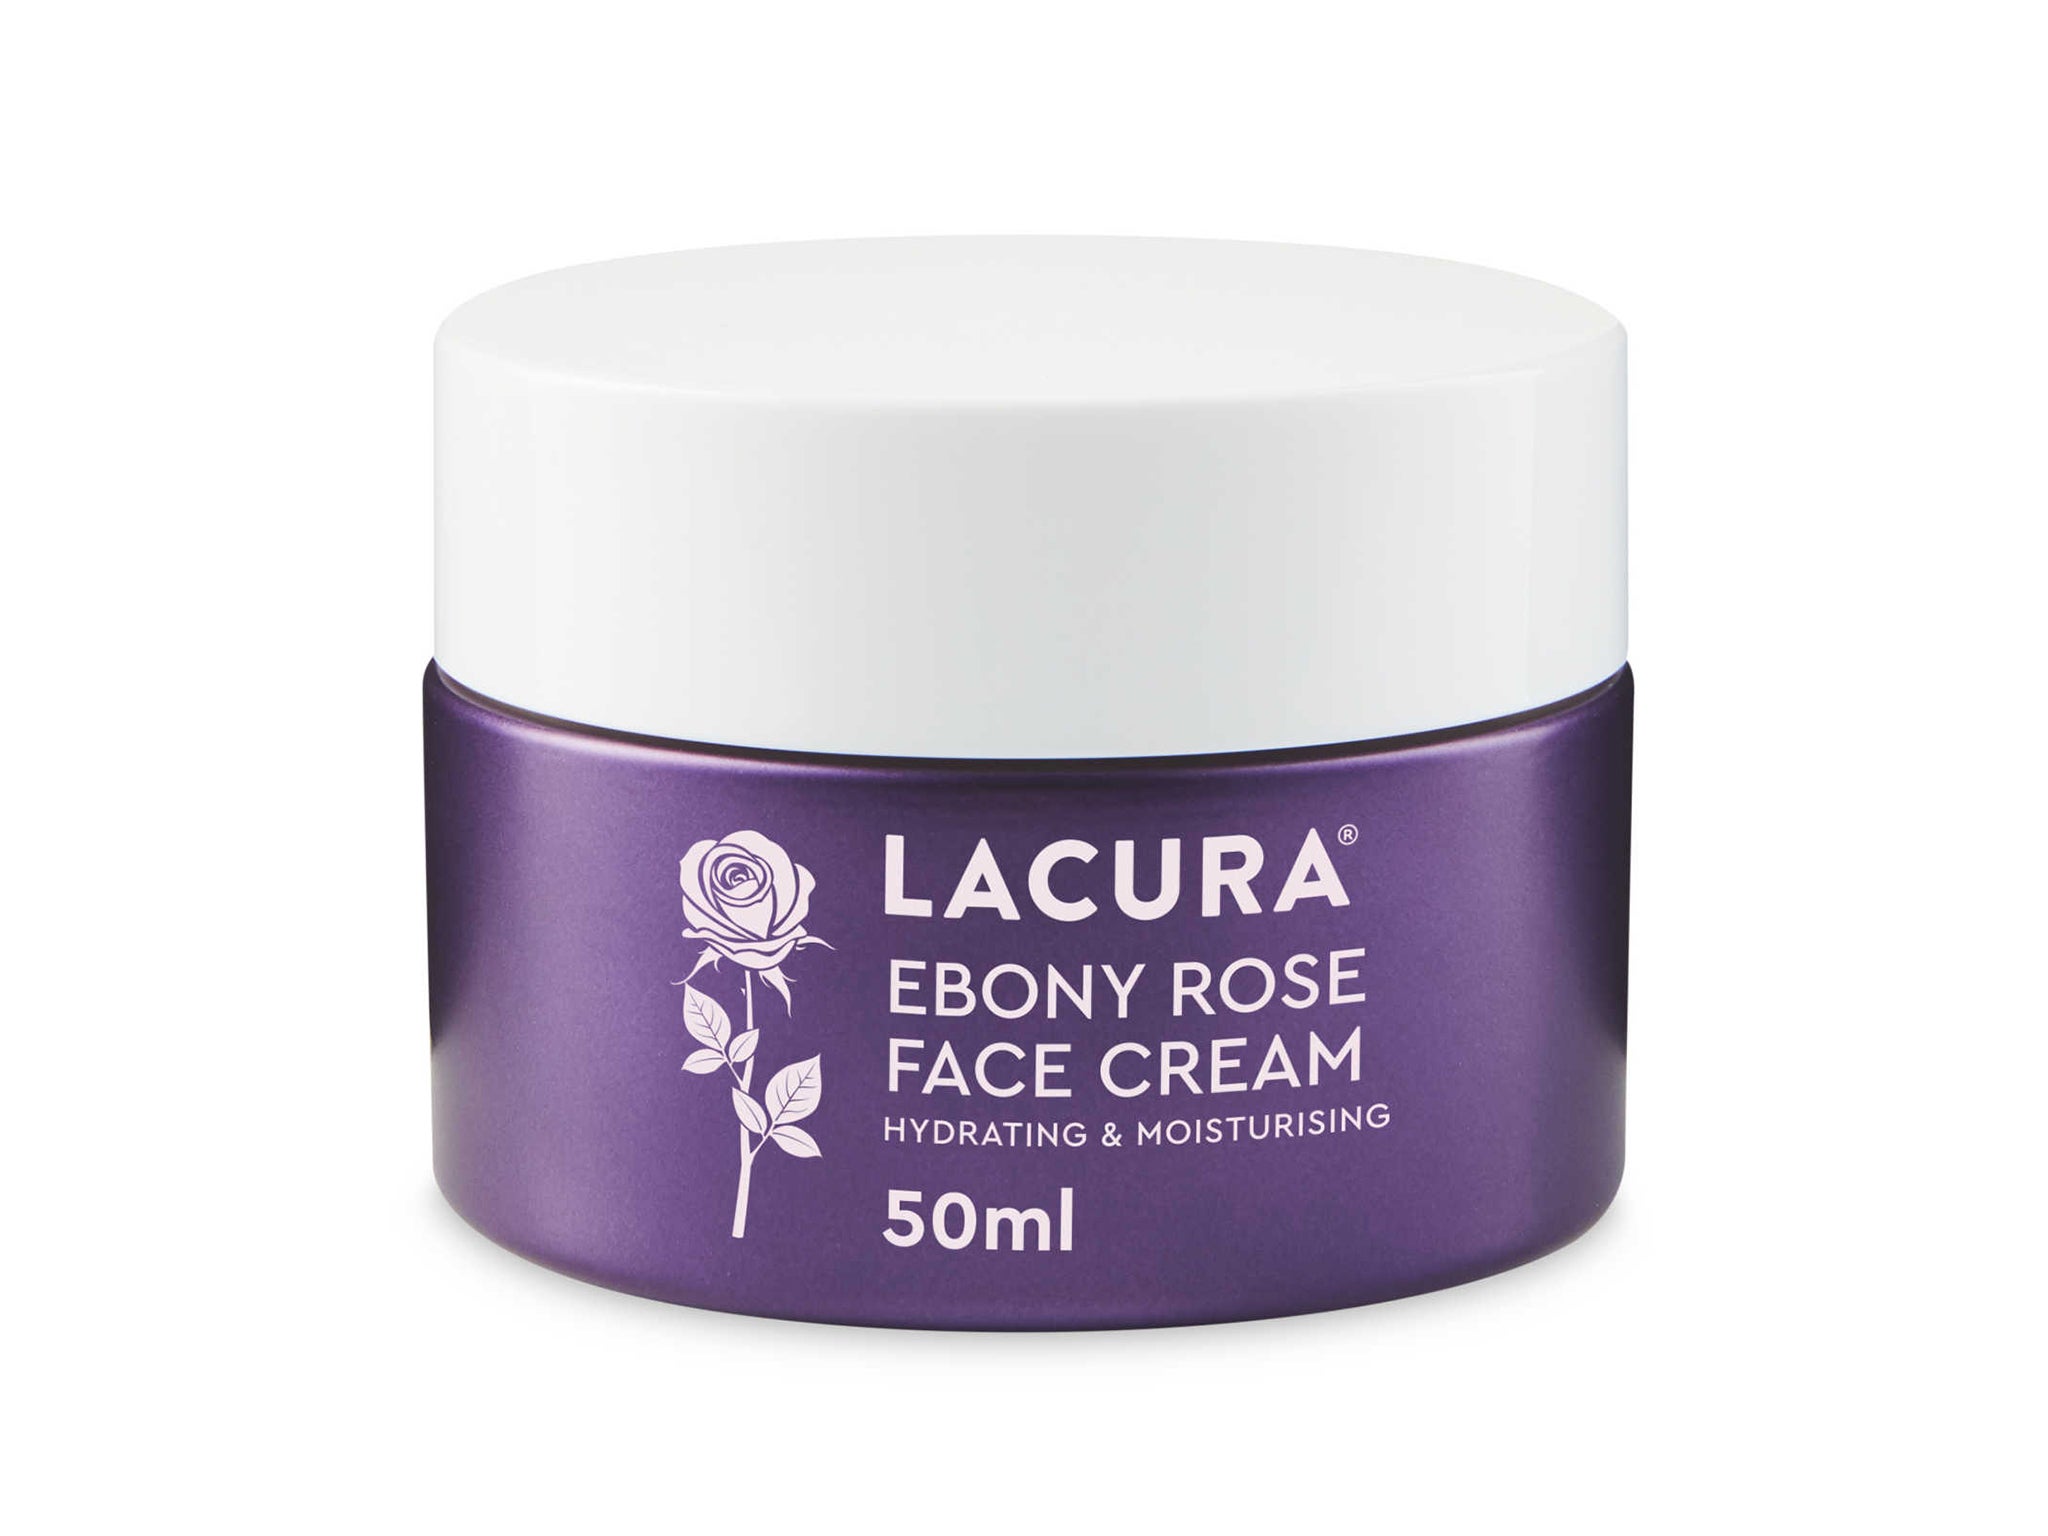 Lacura-Ebony-Rose-Face-Cream-indybest-aldi-dupe-sisley-paris.jpg